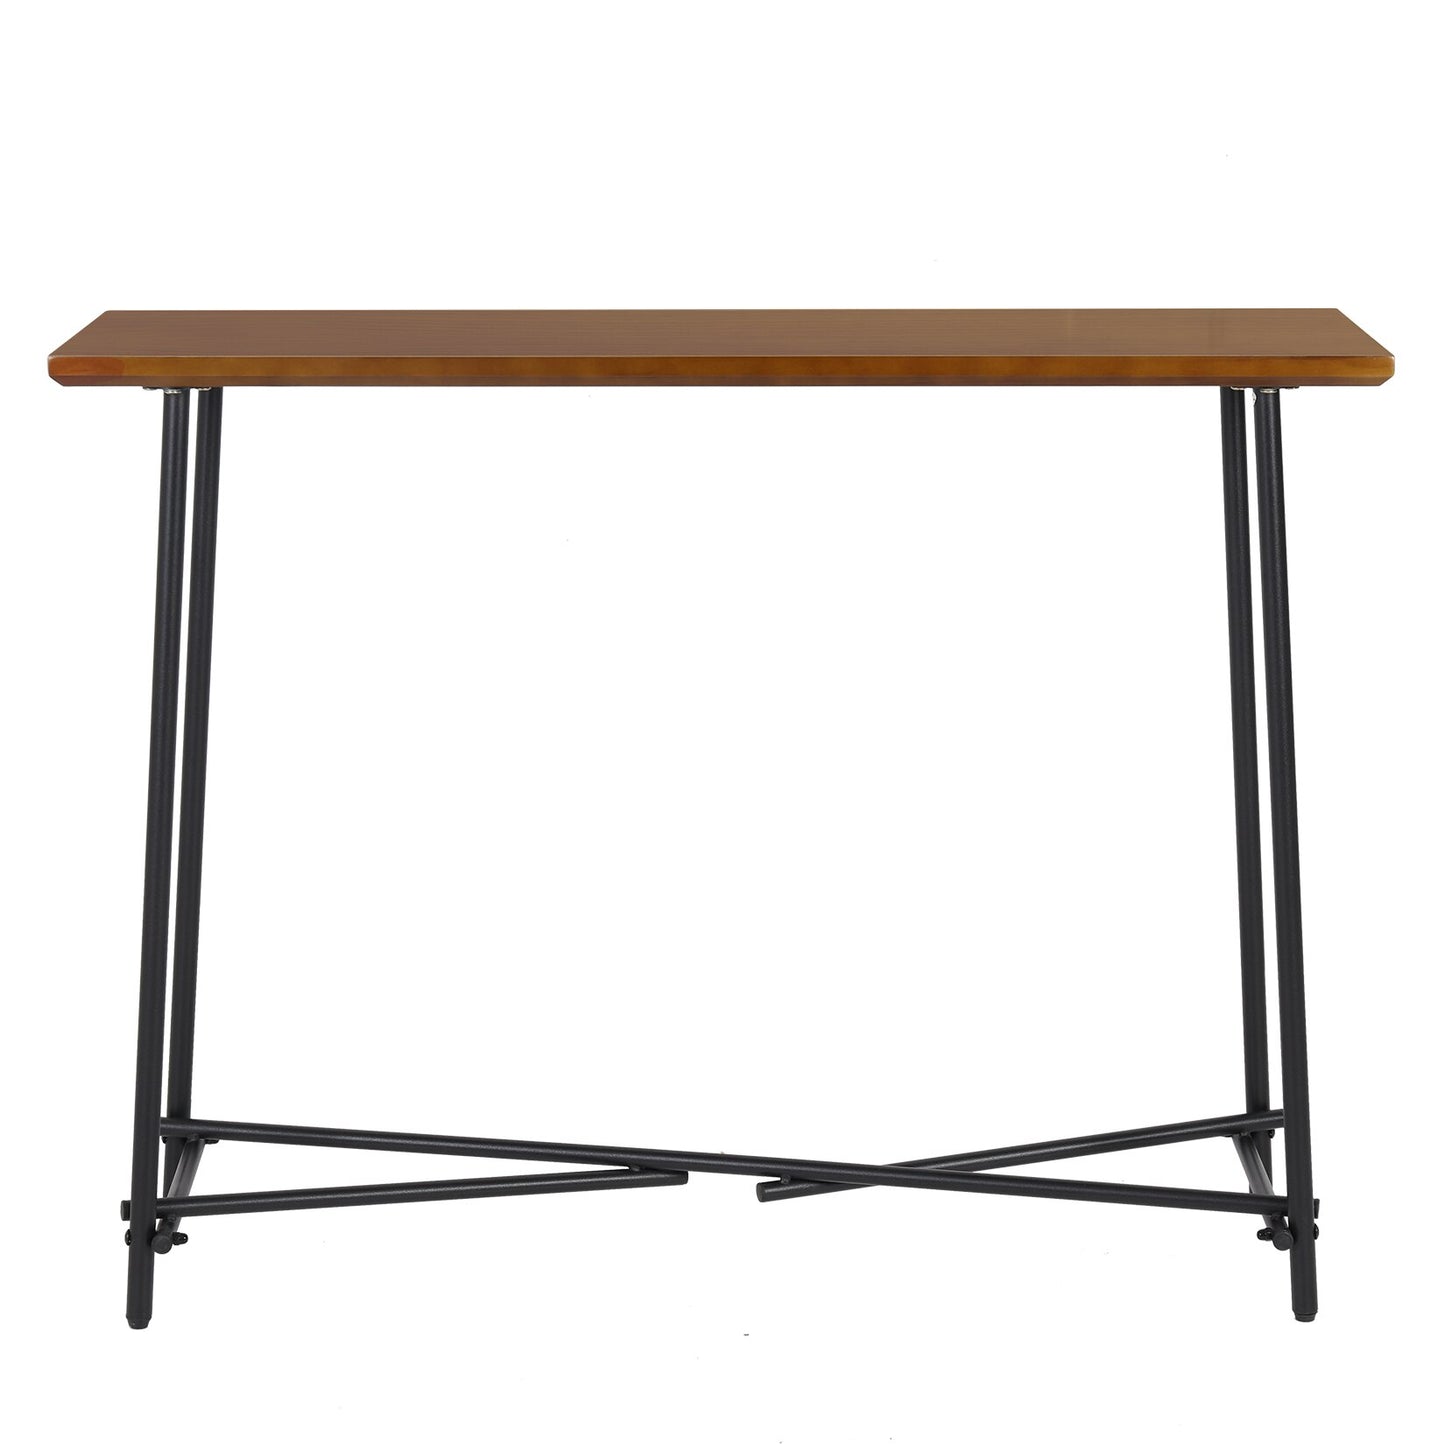 Table console robuste de couleur marron avec rangement - Teinte noyer marron